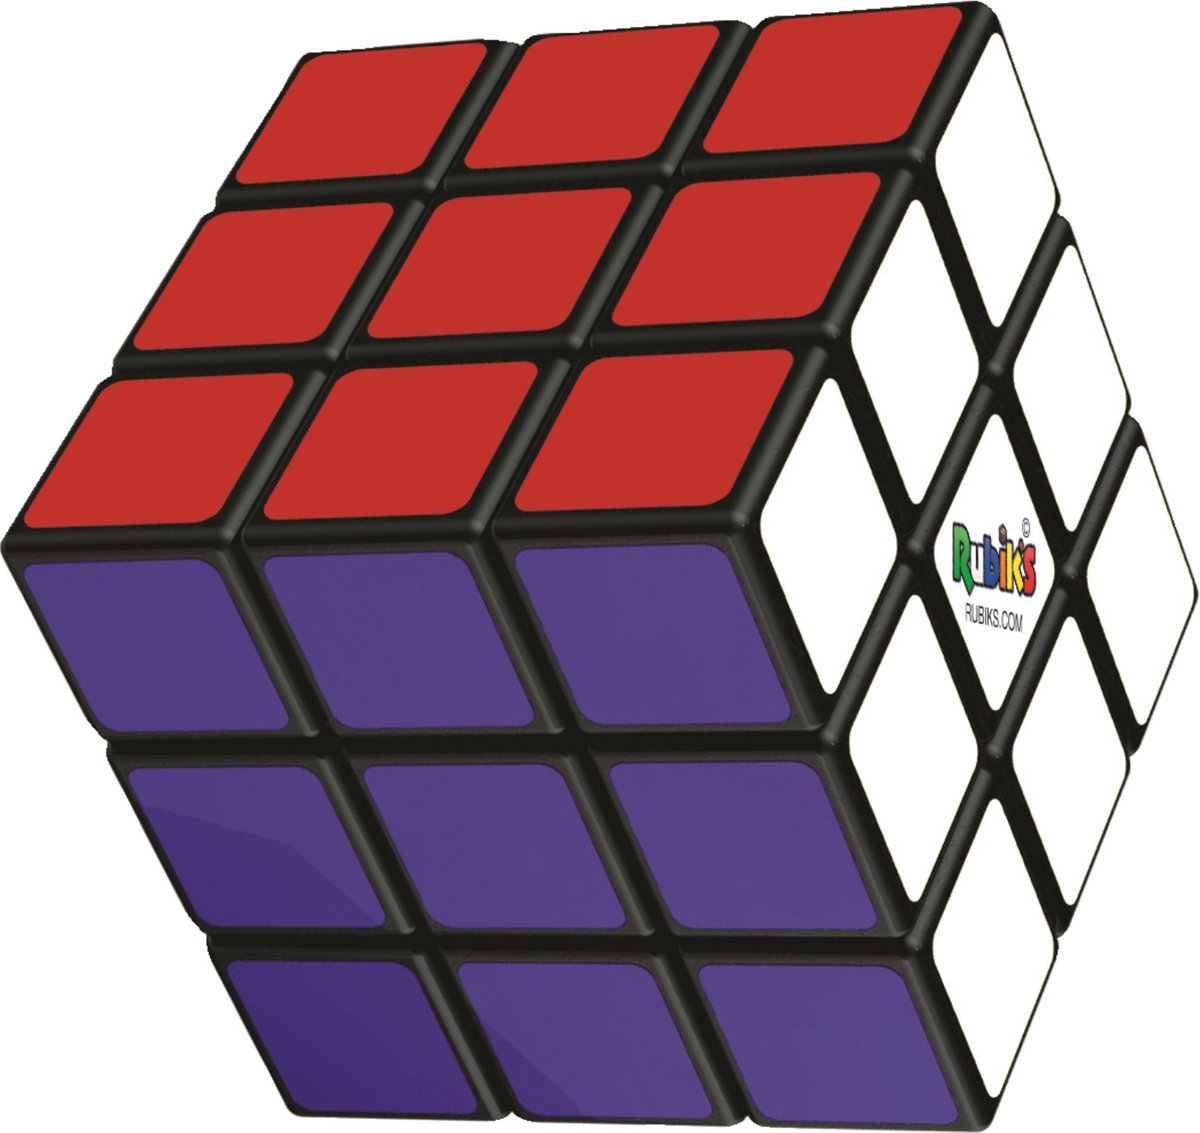 Rubik's Cube 3x3 - Breinbreker Kubus